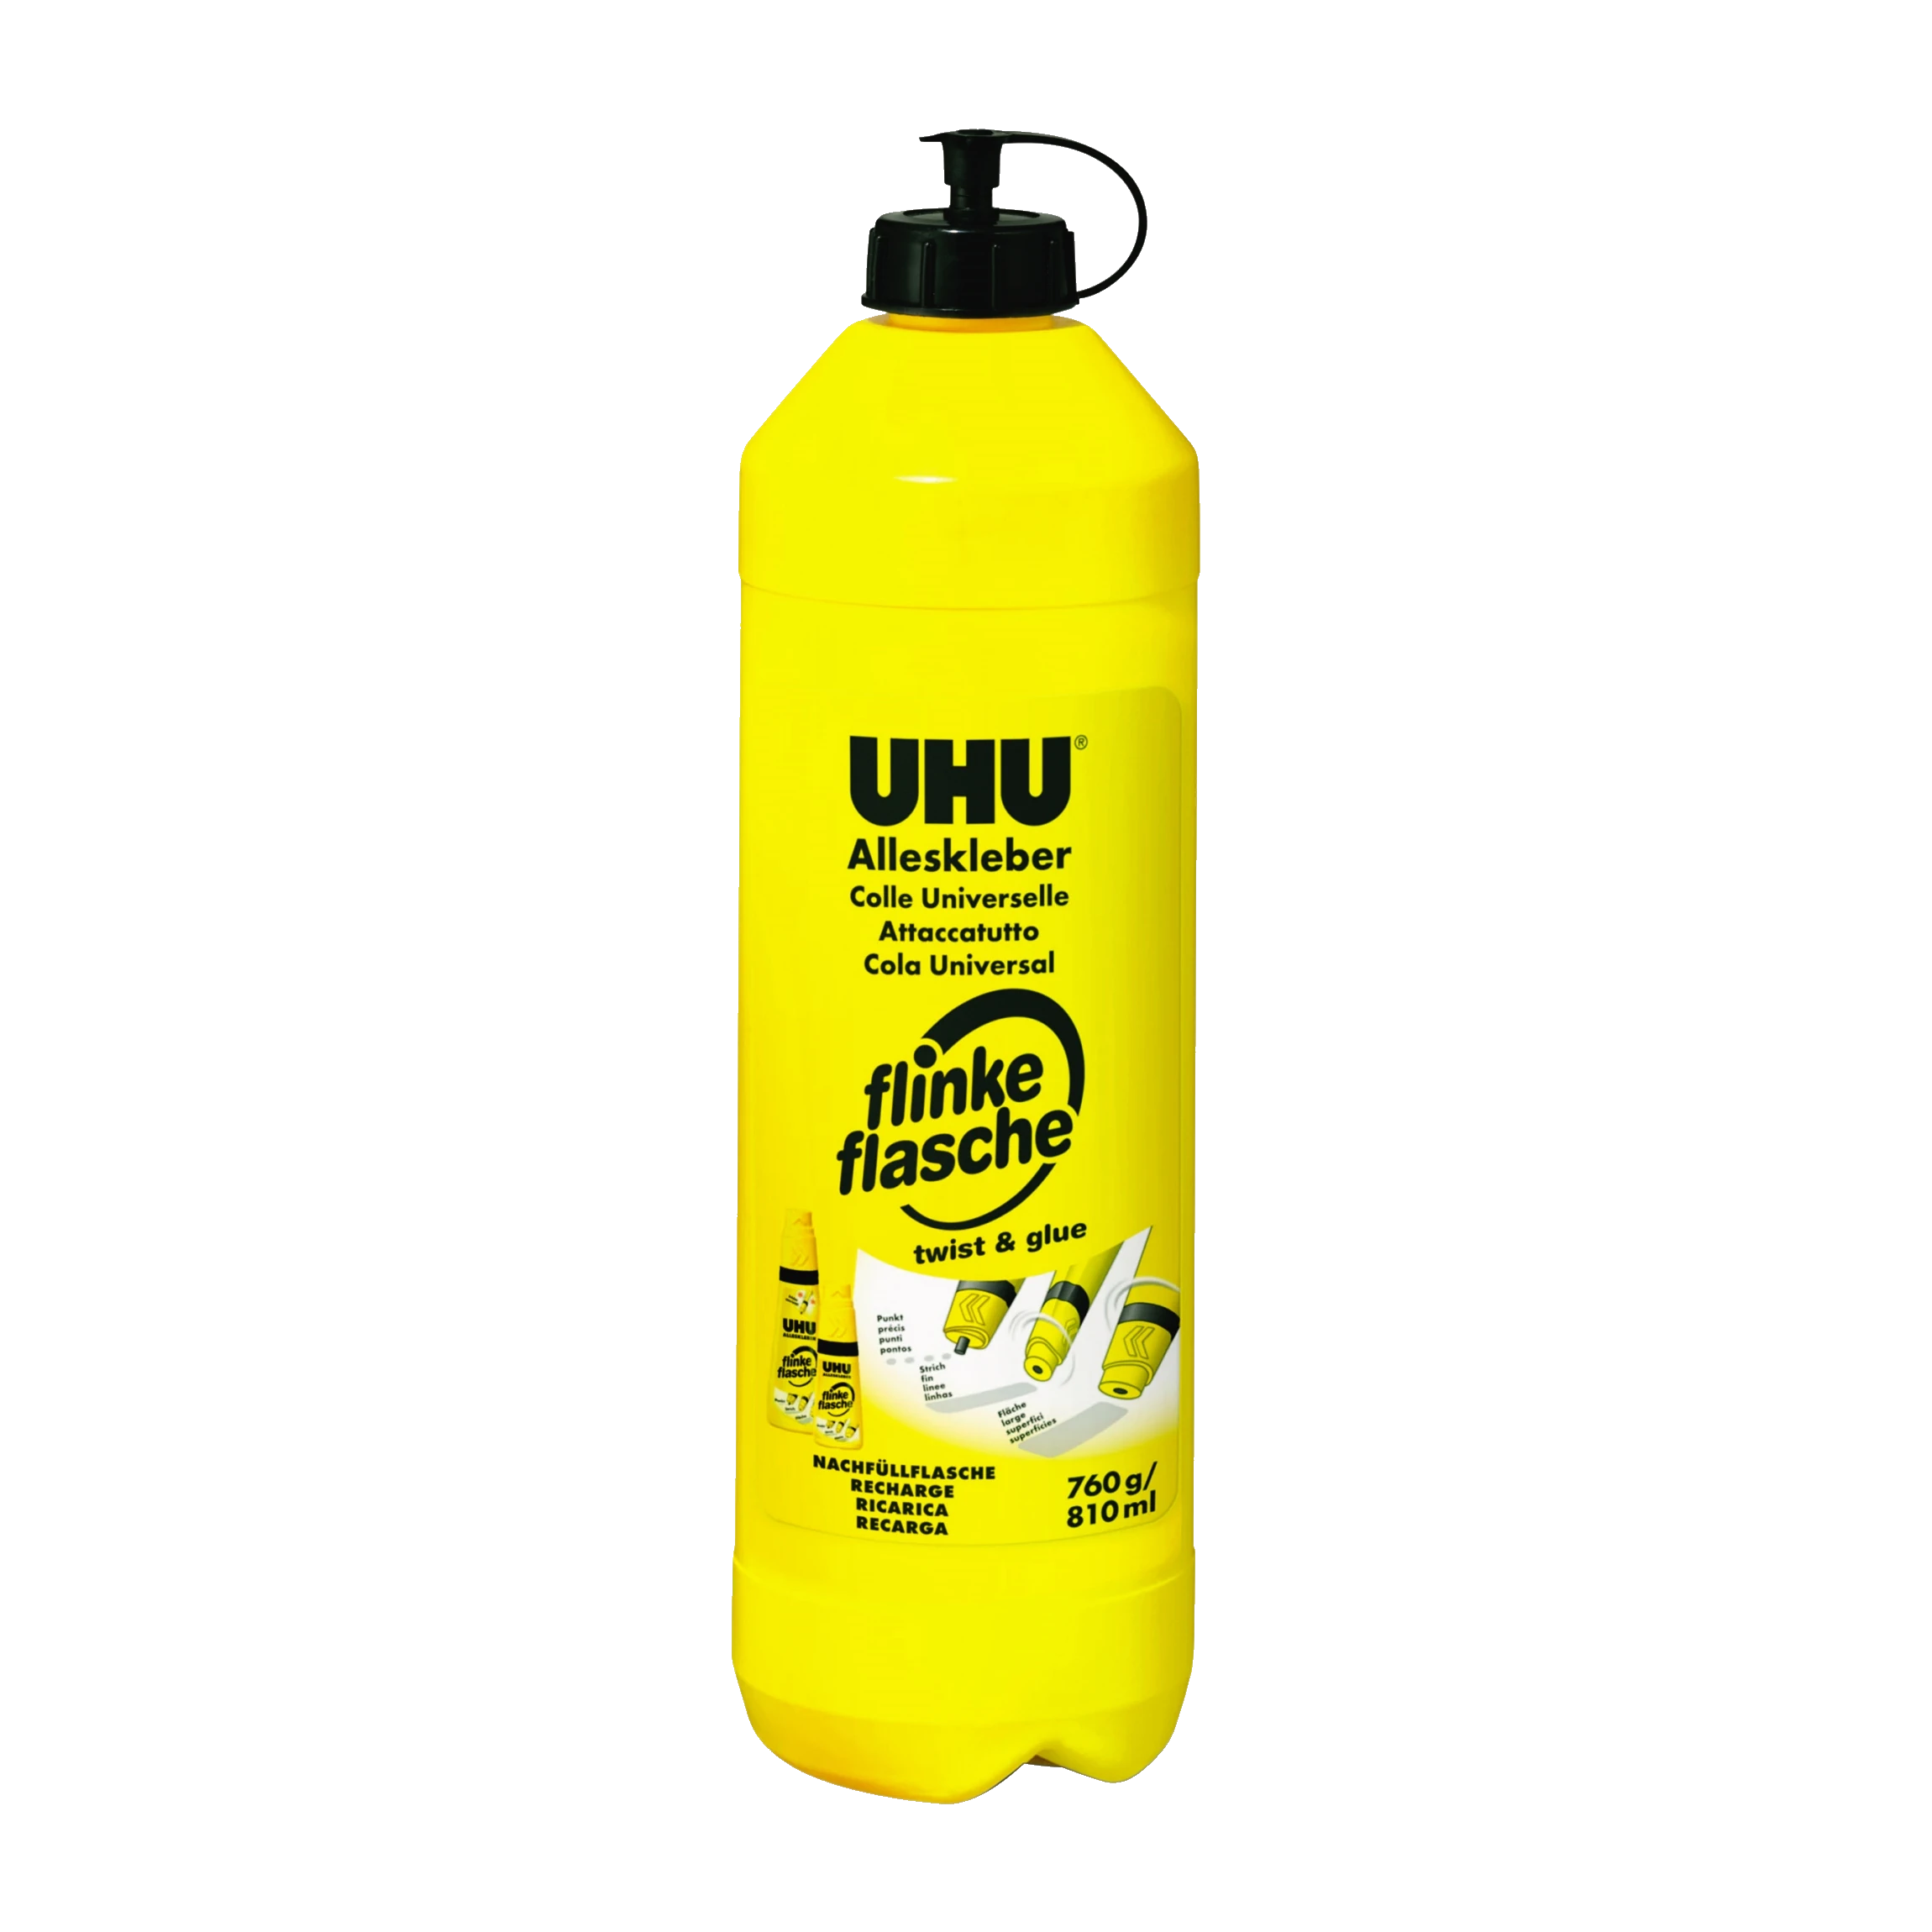 UHU® Nachfüllflasche Alleskleber flinke Flasche 760g